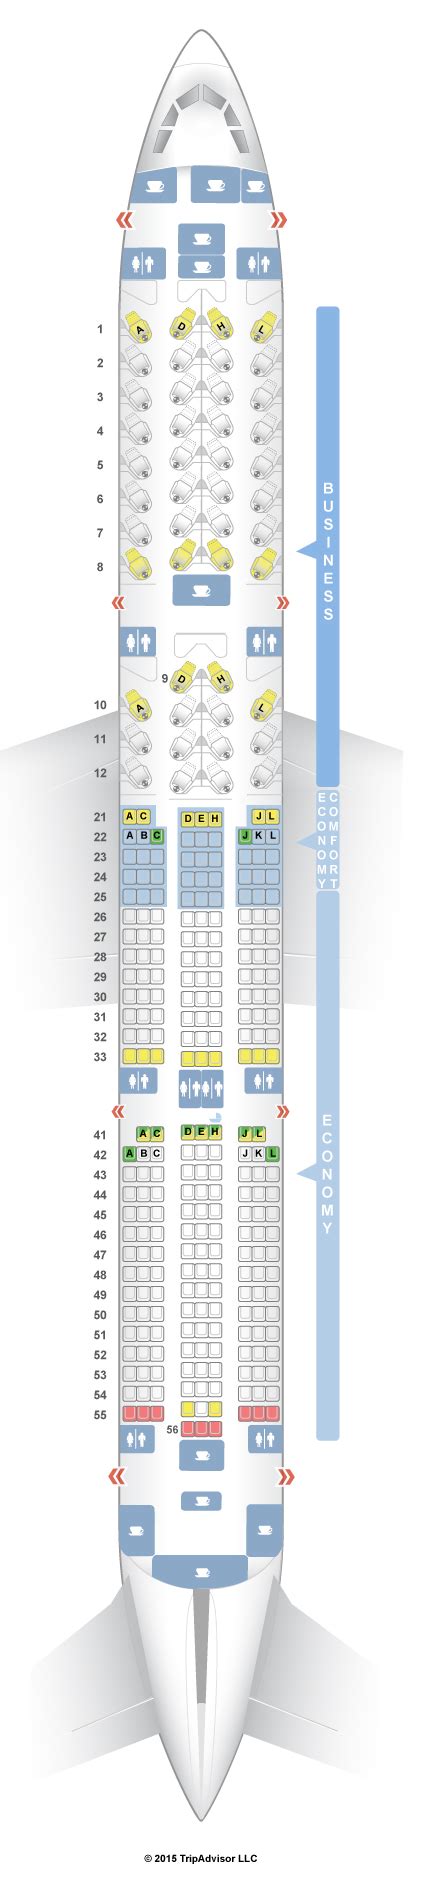 Seatguru Seat Map Finnair Airbus A350 900 V1 350